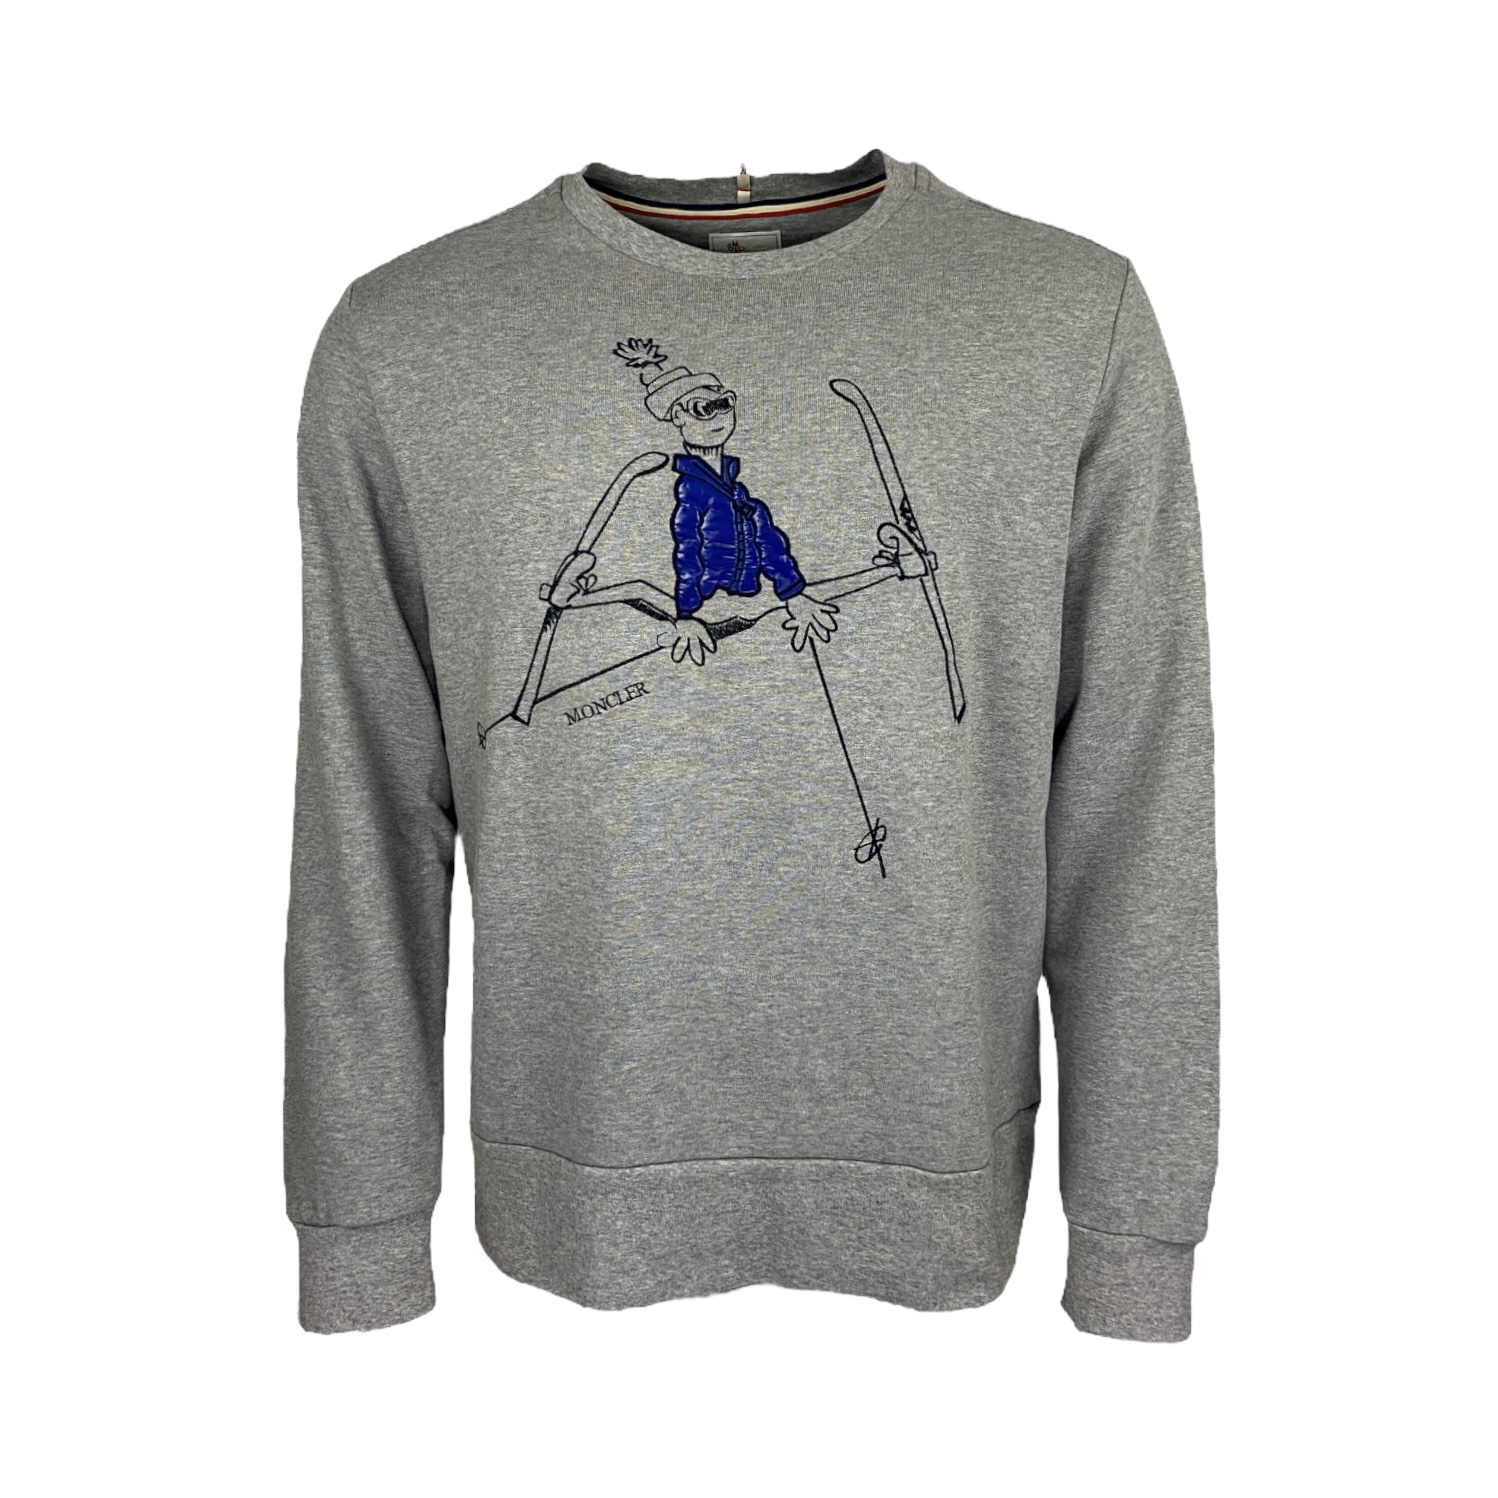 Moncler Grenoble Sweatshirt